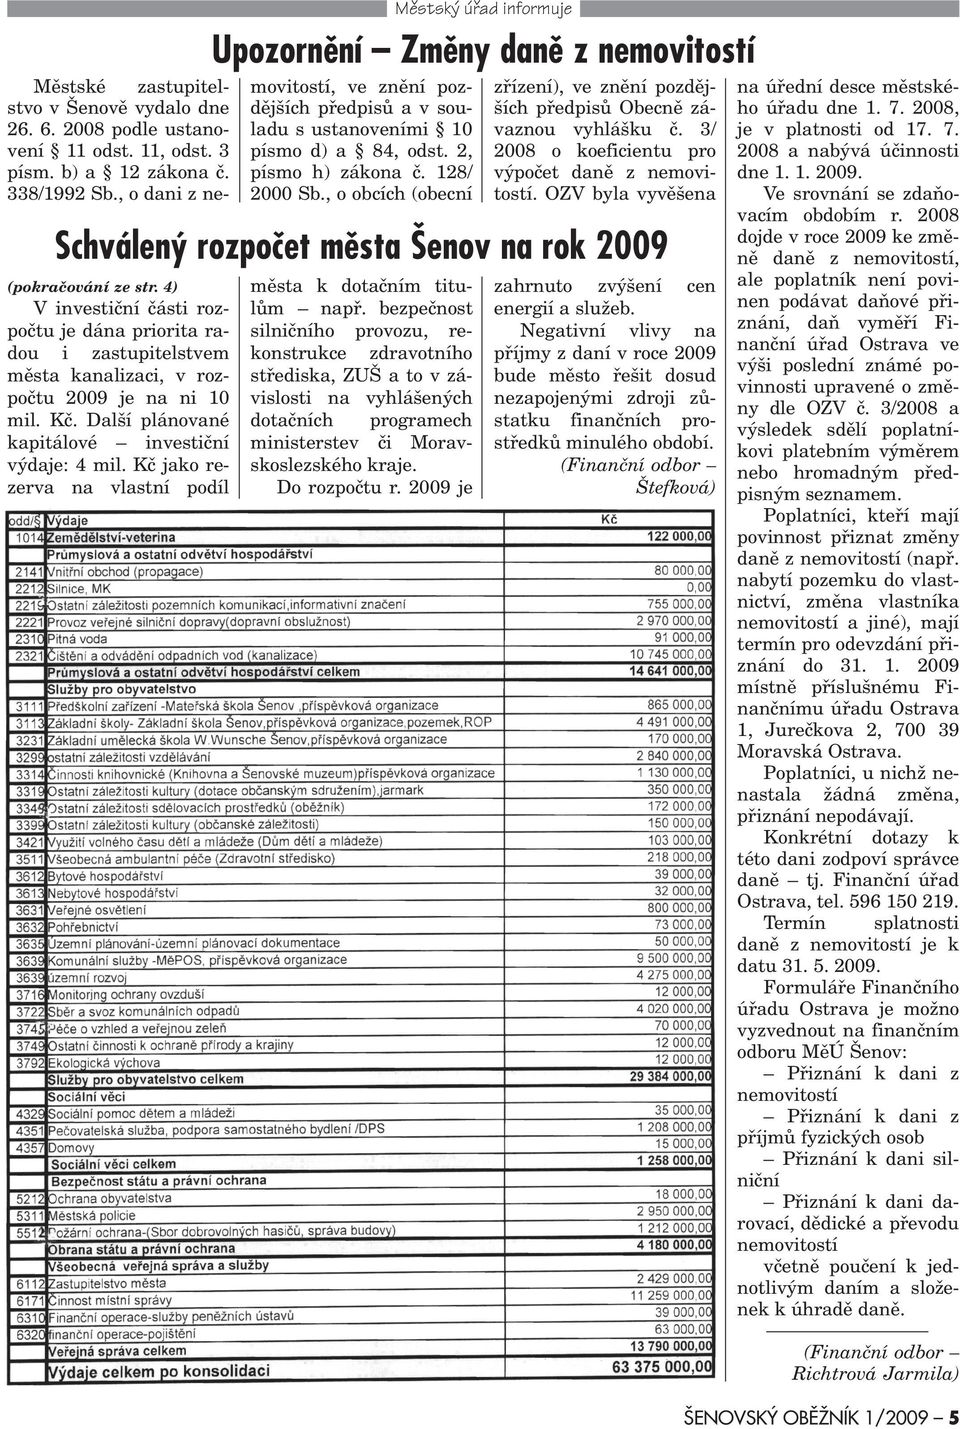 Kè jako rezerva na vlastní podíl Upozornìní Zmìny danì z nemovitostí Mìstské zastupitelstvo v Šenovì vydalo dne 26. 6. 2008 podle ustanovení 11 odst. 11, odst. 3 písm. b) a 12 zákona è. 338/1992 Sb.